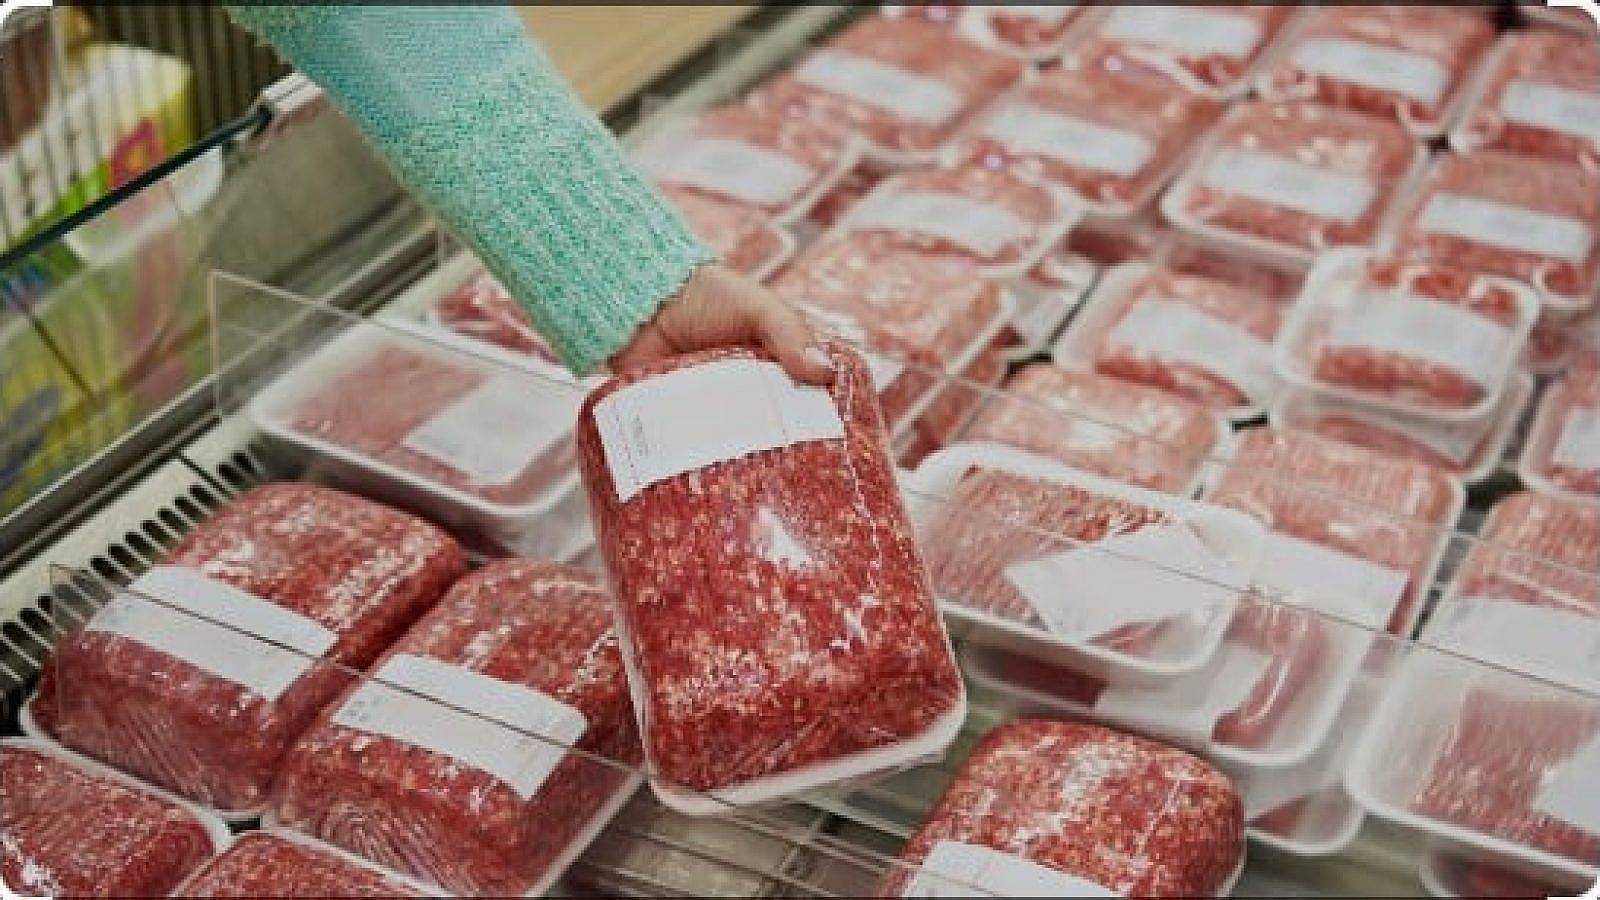 Ground beef in supermarket meat case